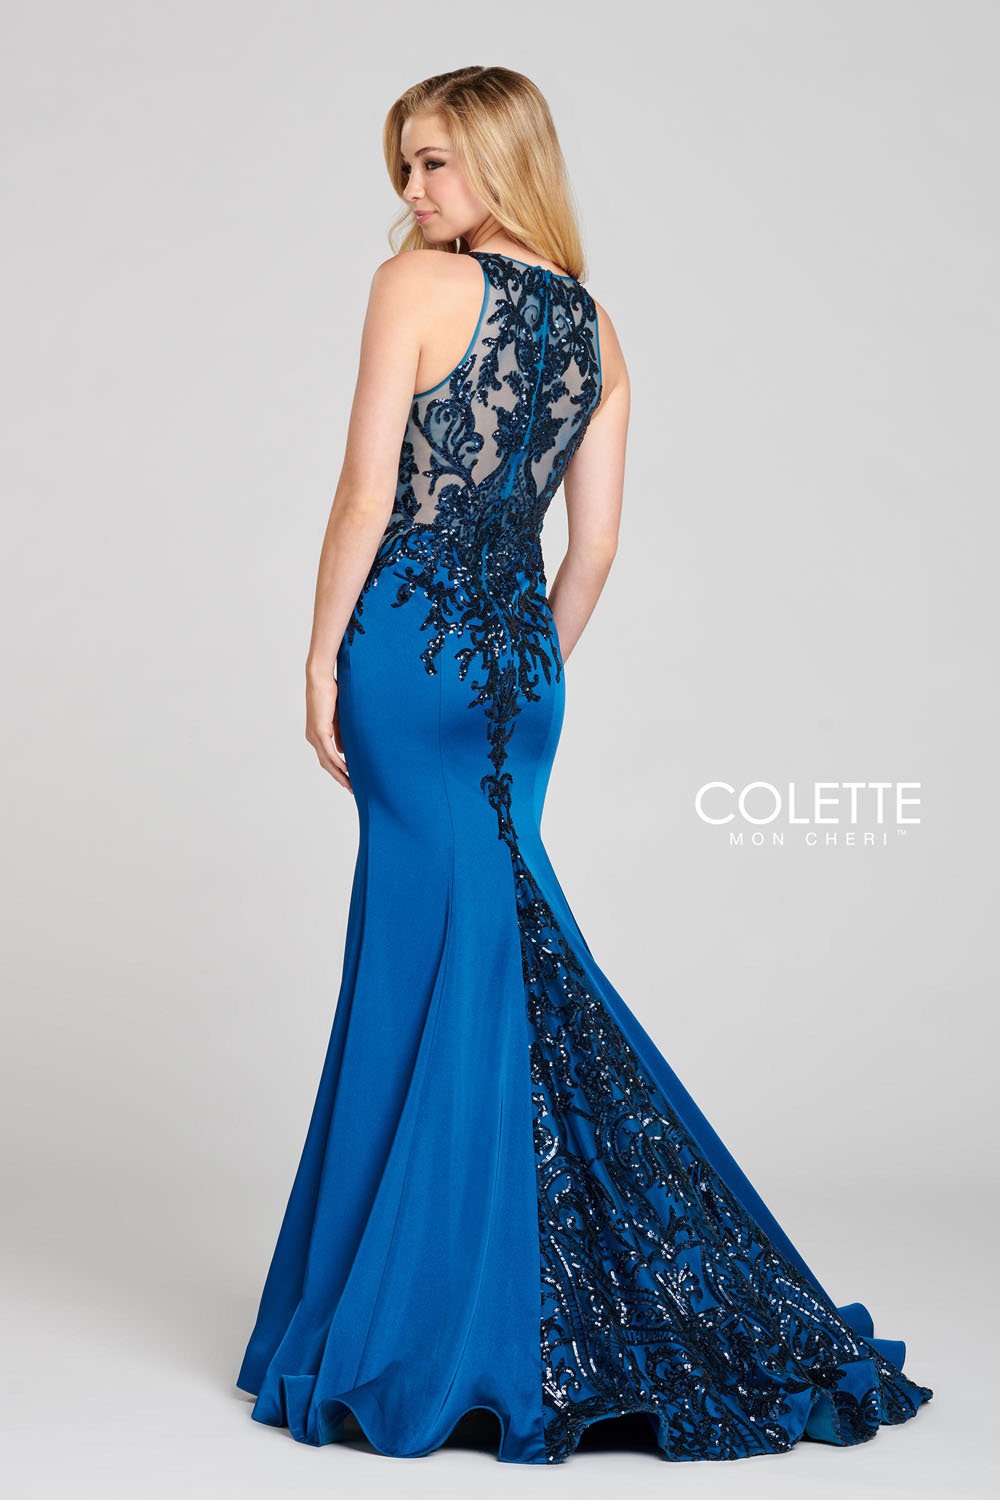 Colette CL12132 Dress | Colette Dresses | Formal Approach